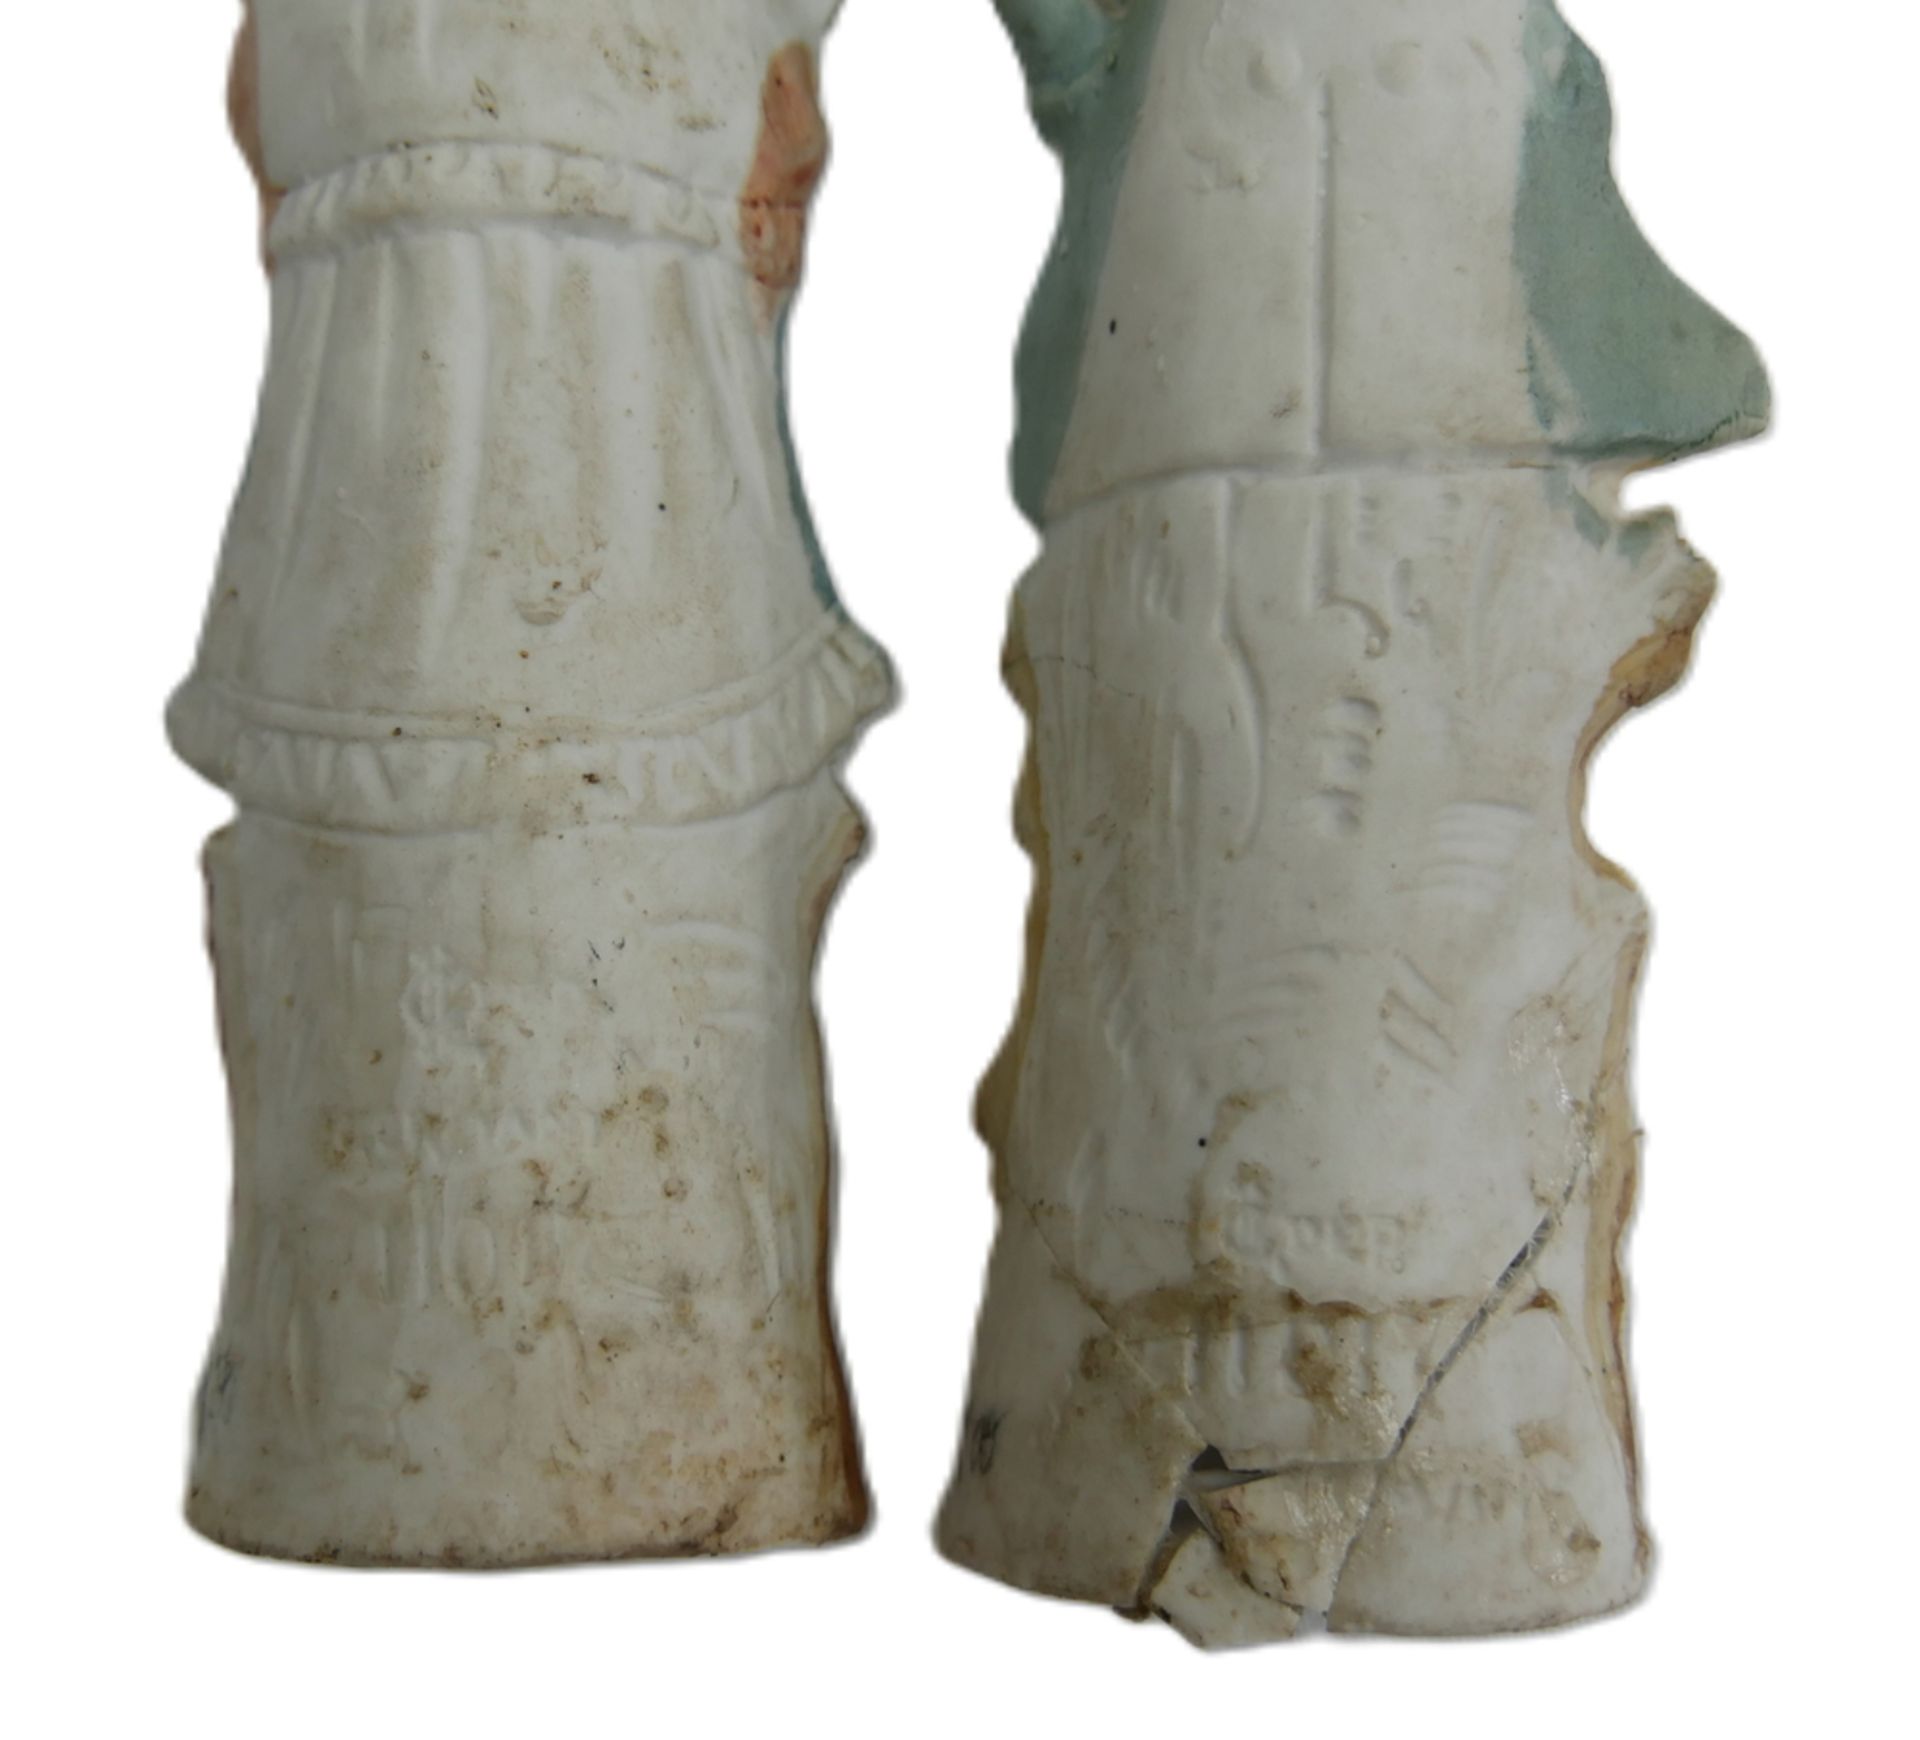 2 antike Bisquit Porzellanfiguren, berieben, der Knabe wurde am Sockel geklebt, Chips vorhanden. - Image 2 of 2